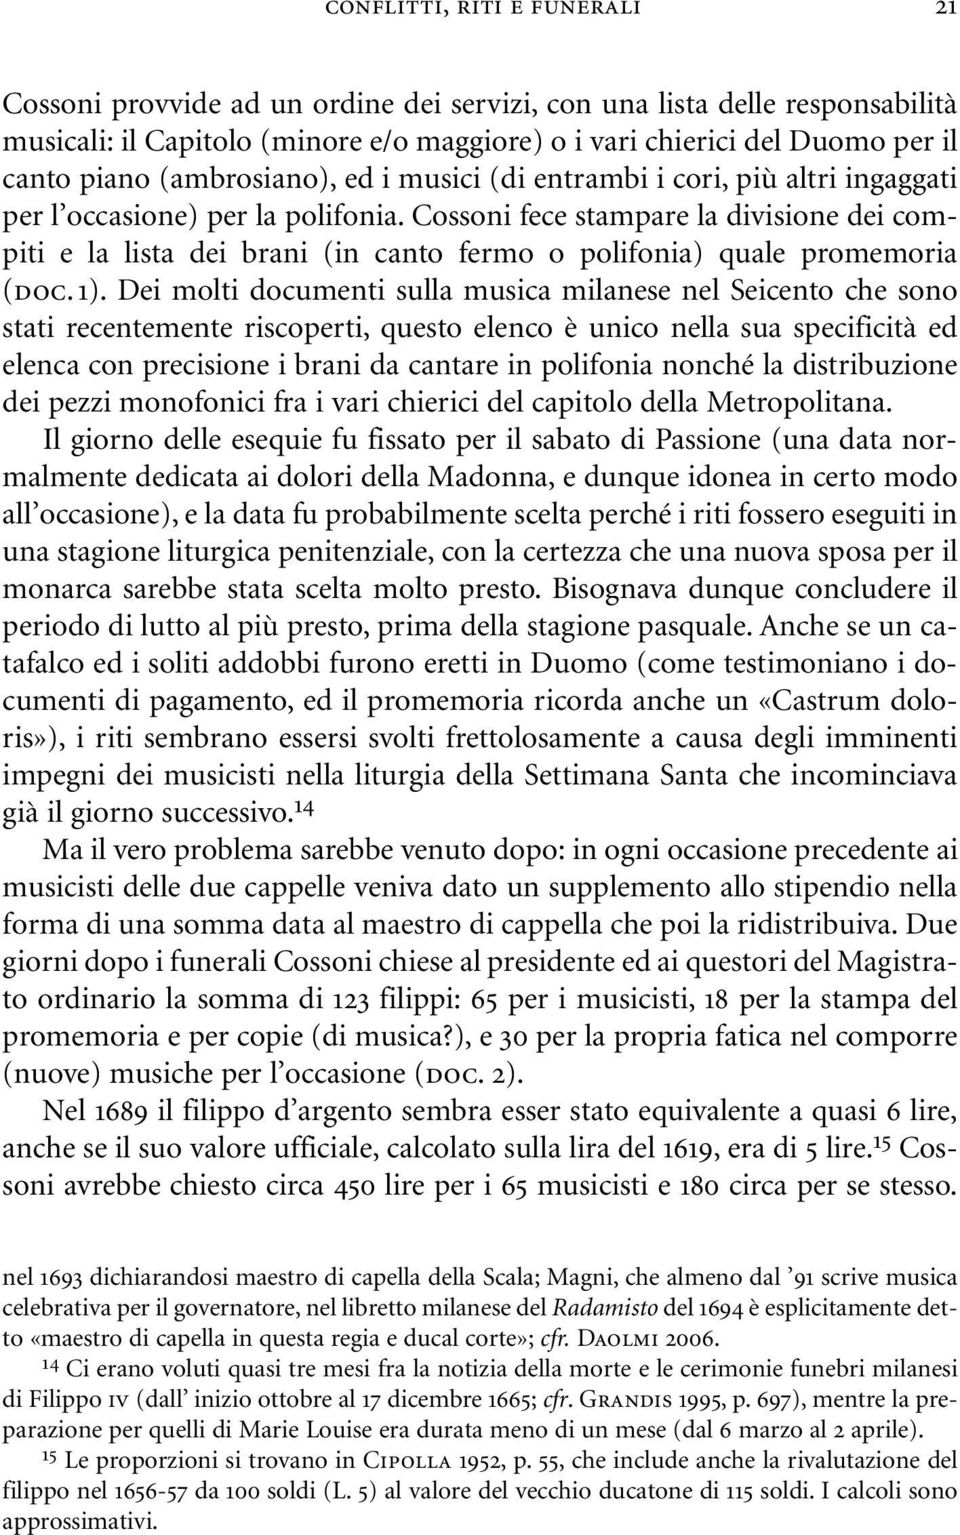 Cossoni fece stampare la divisione dei compiti e la lista dei brani (in canto fermo o polifonia) quale promemoria (doc. 1).